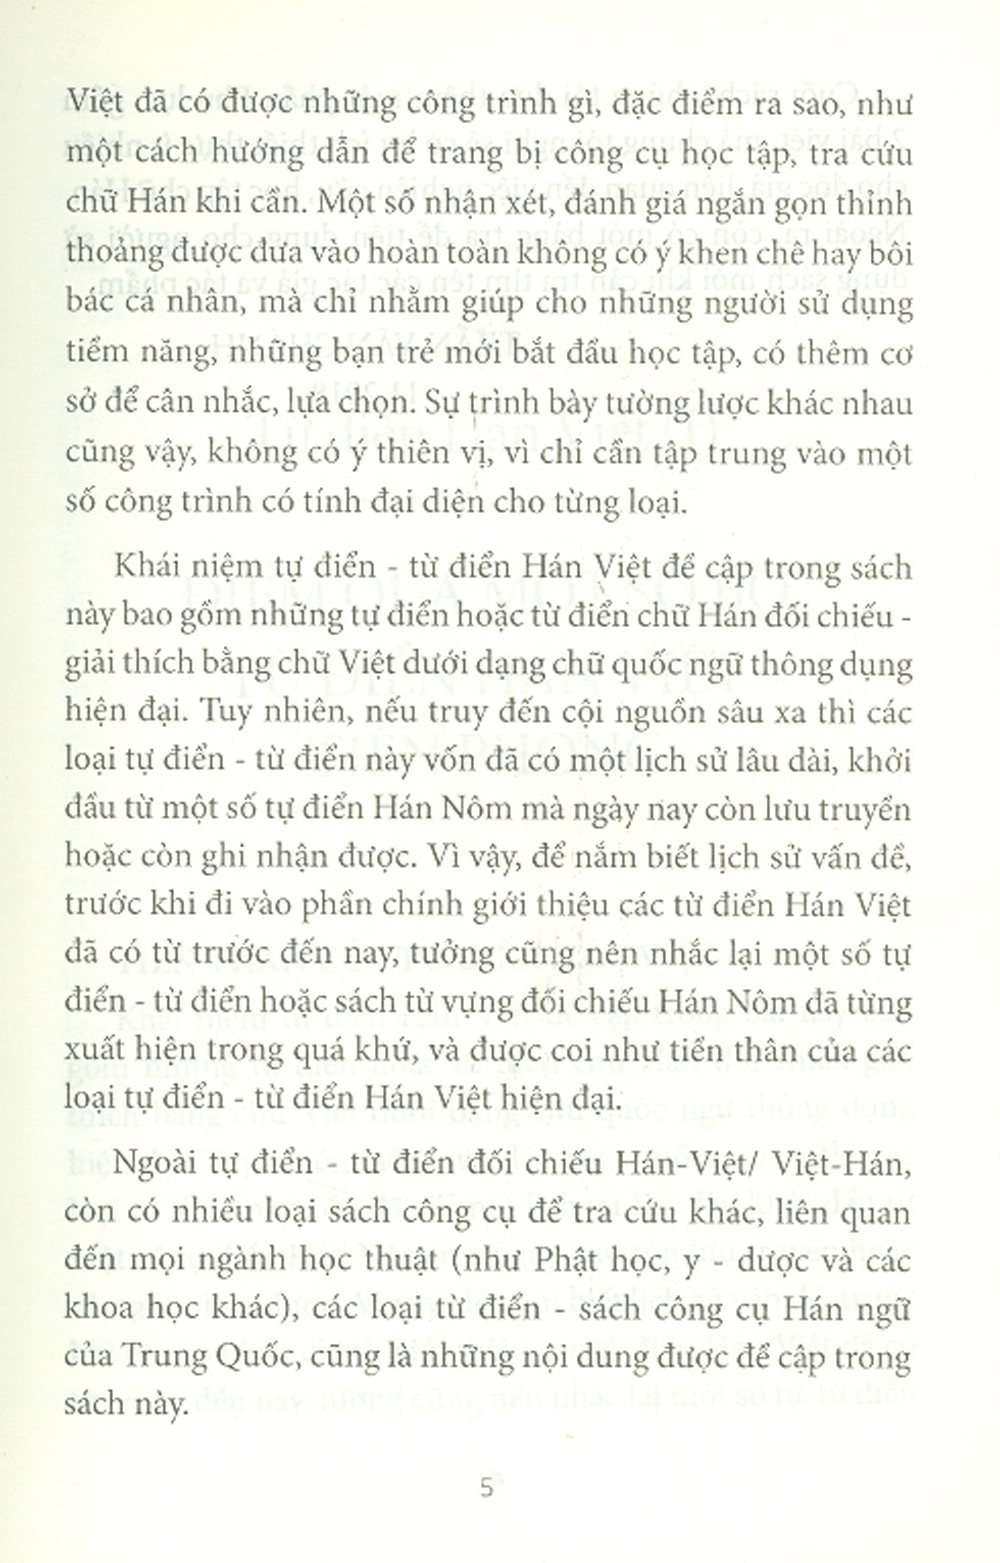 Từ Điển - Sách Công Cụ Chữ Hán Của Việt Nam Và Trung Quốc